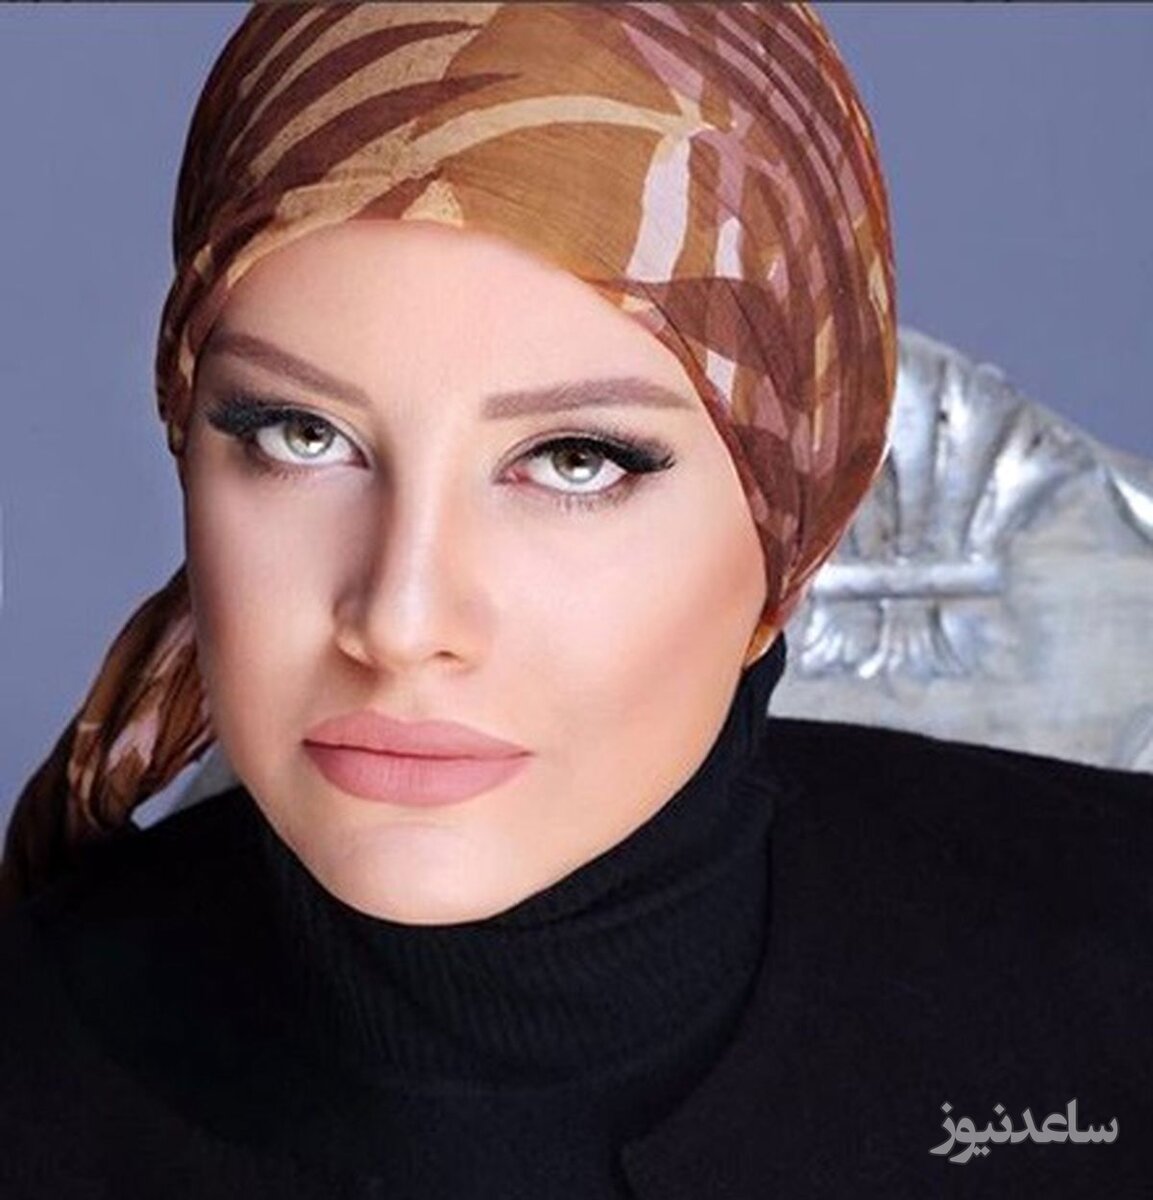 شراره رخام با چادر و پوشش زیبای عربی